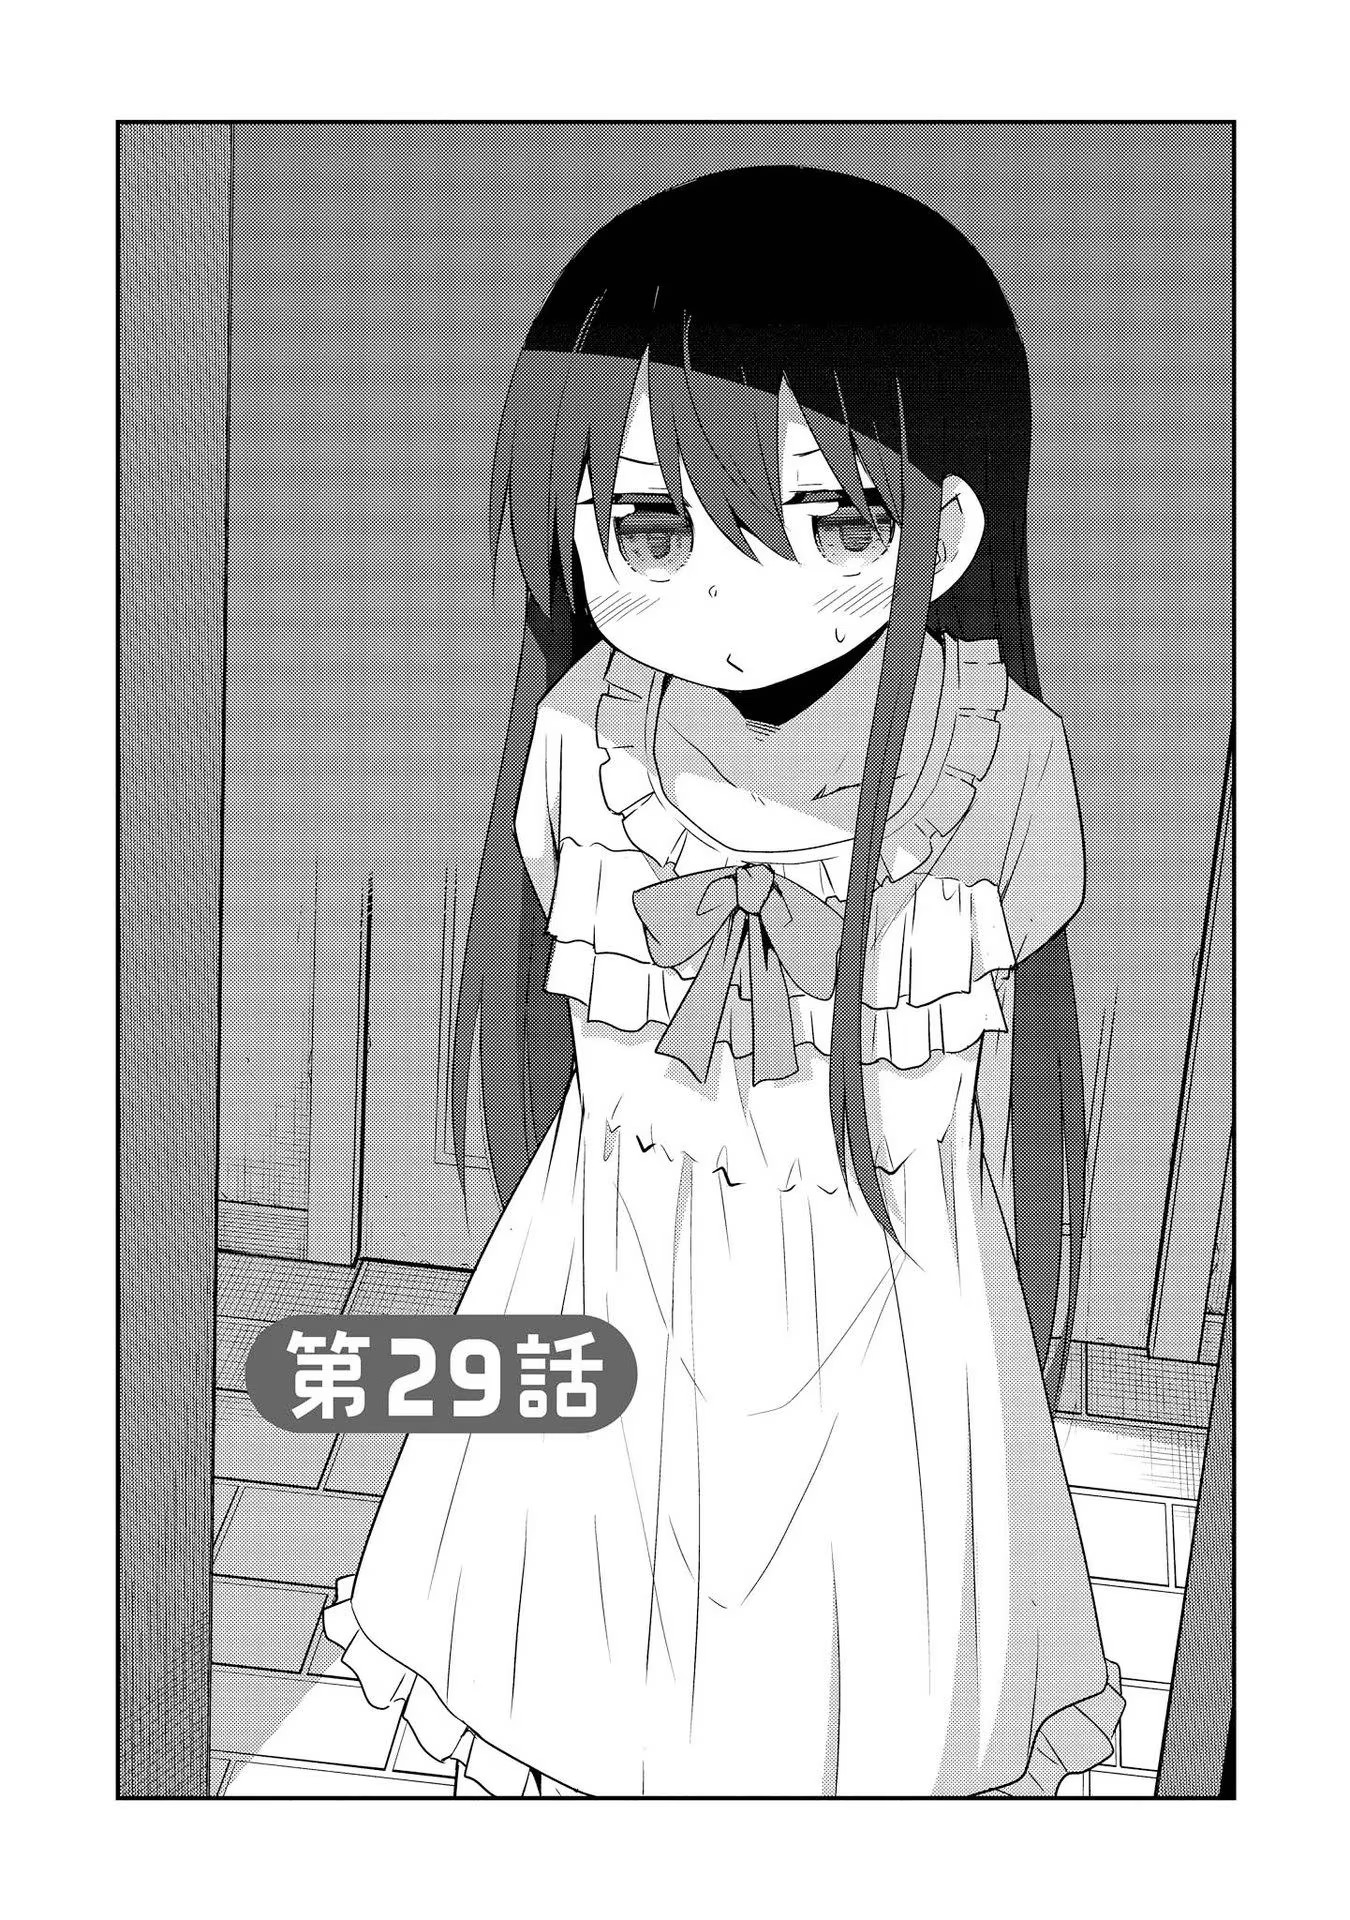 Watashi ni Tenshi ga Maiorita! - Chapter 29 - Page 1